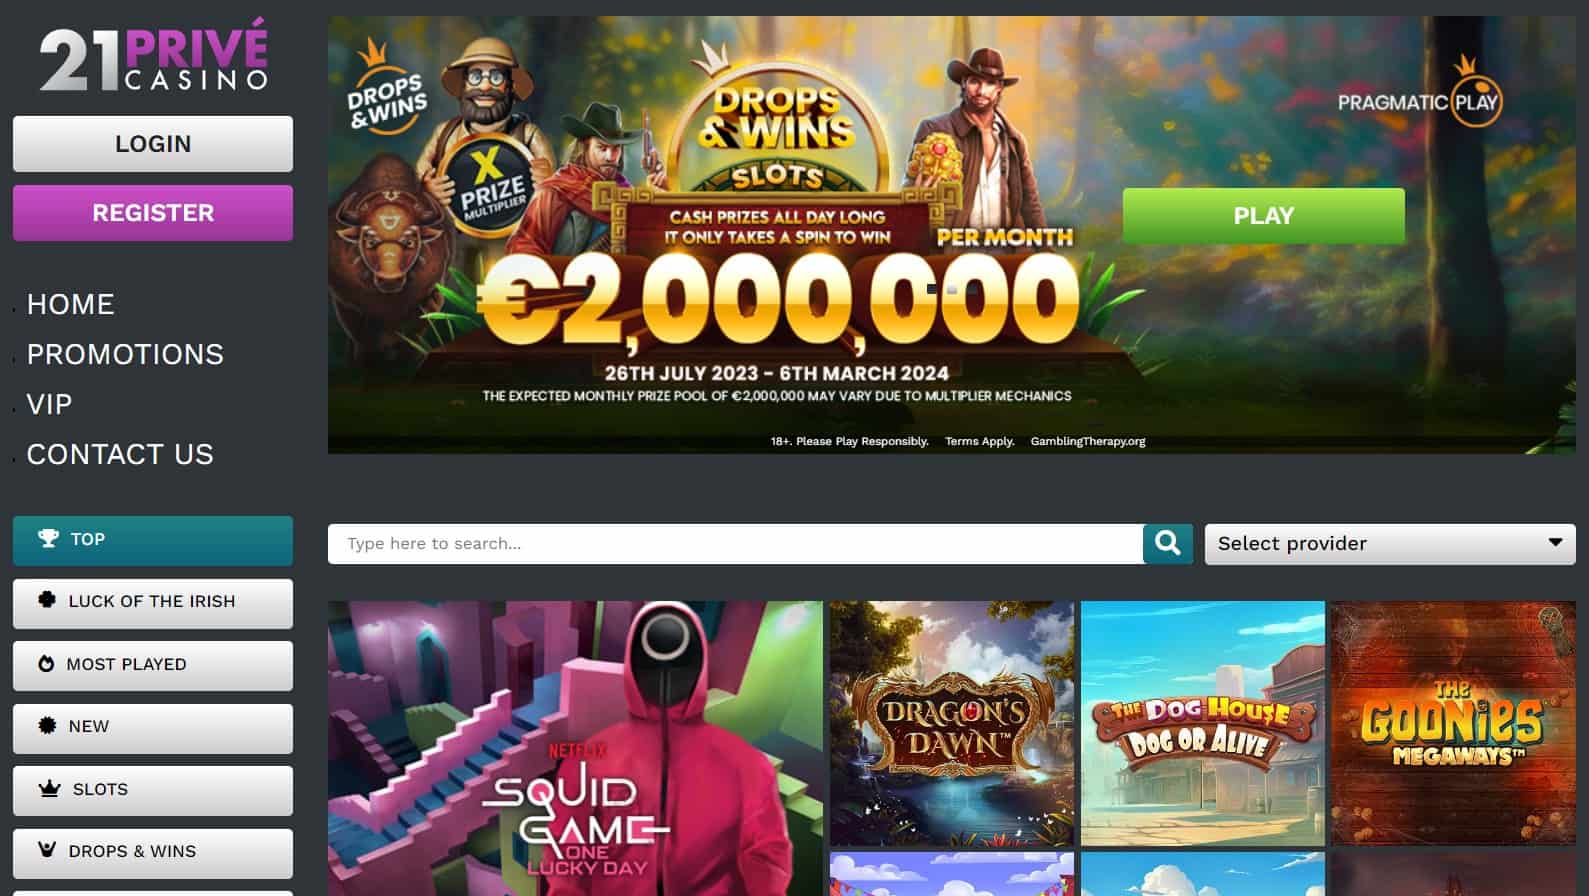 21prive casino main page